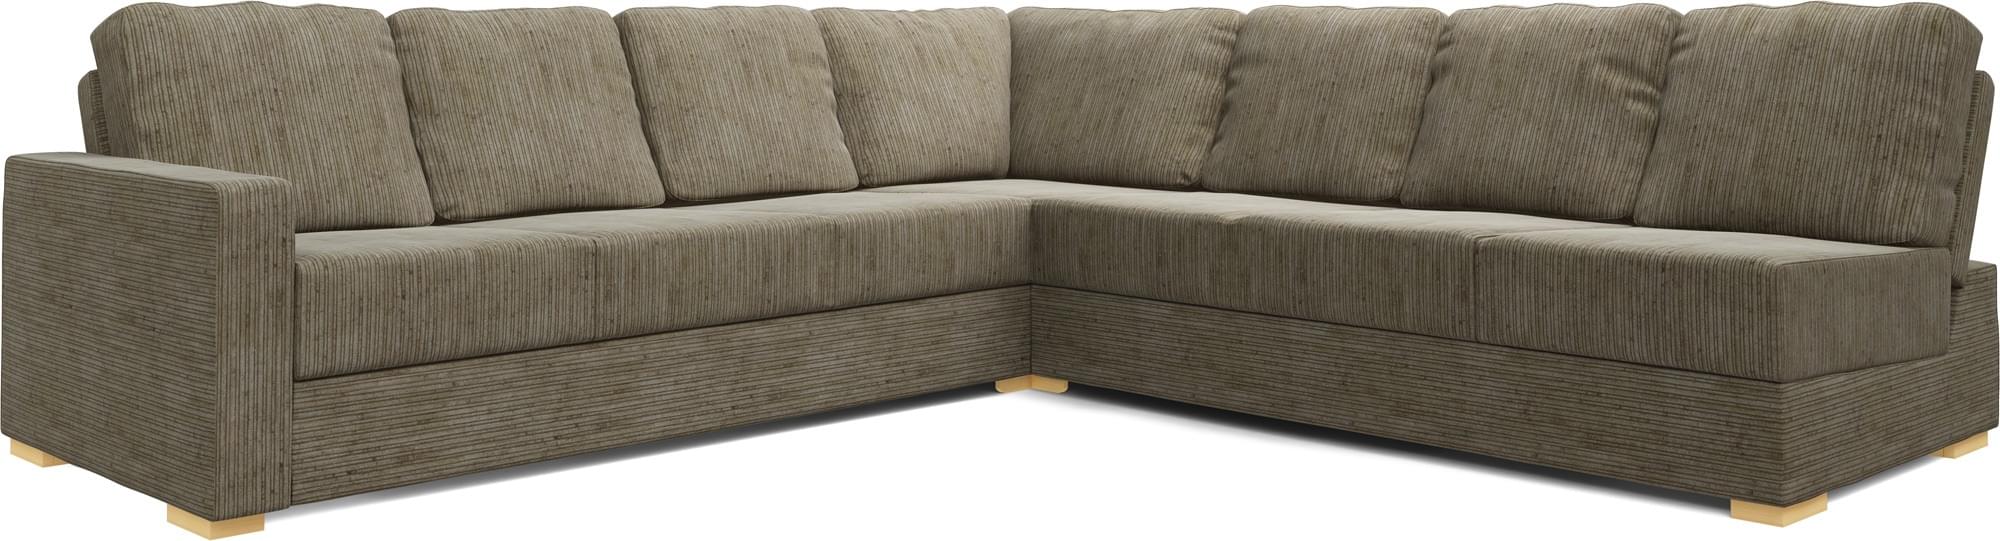 Lear Armless 4X4 Double Sofa Bed